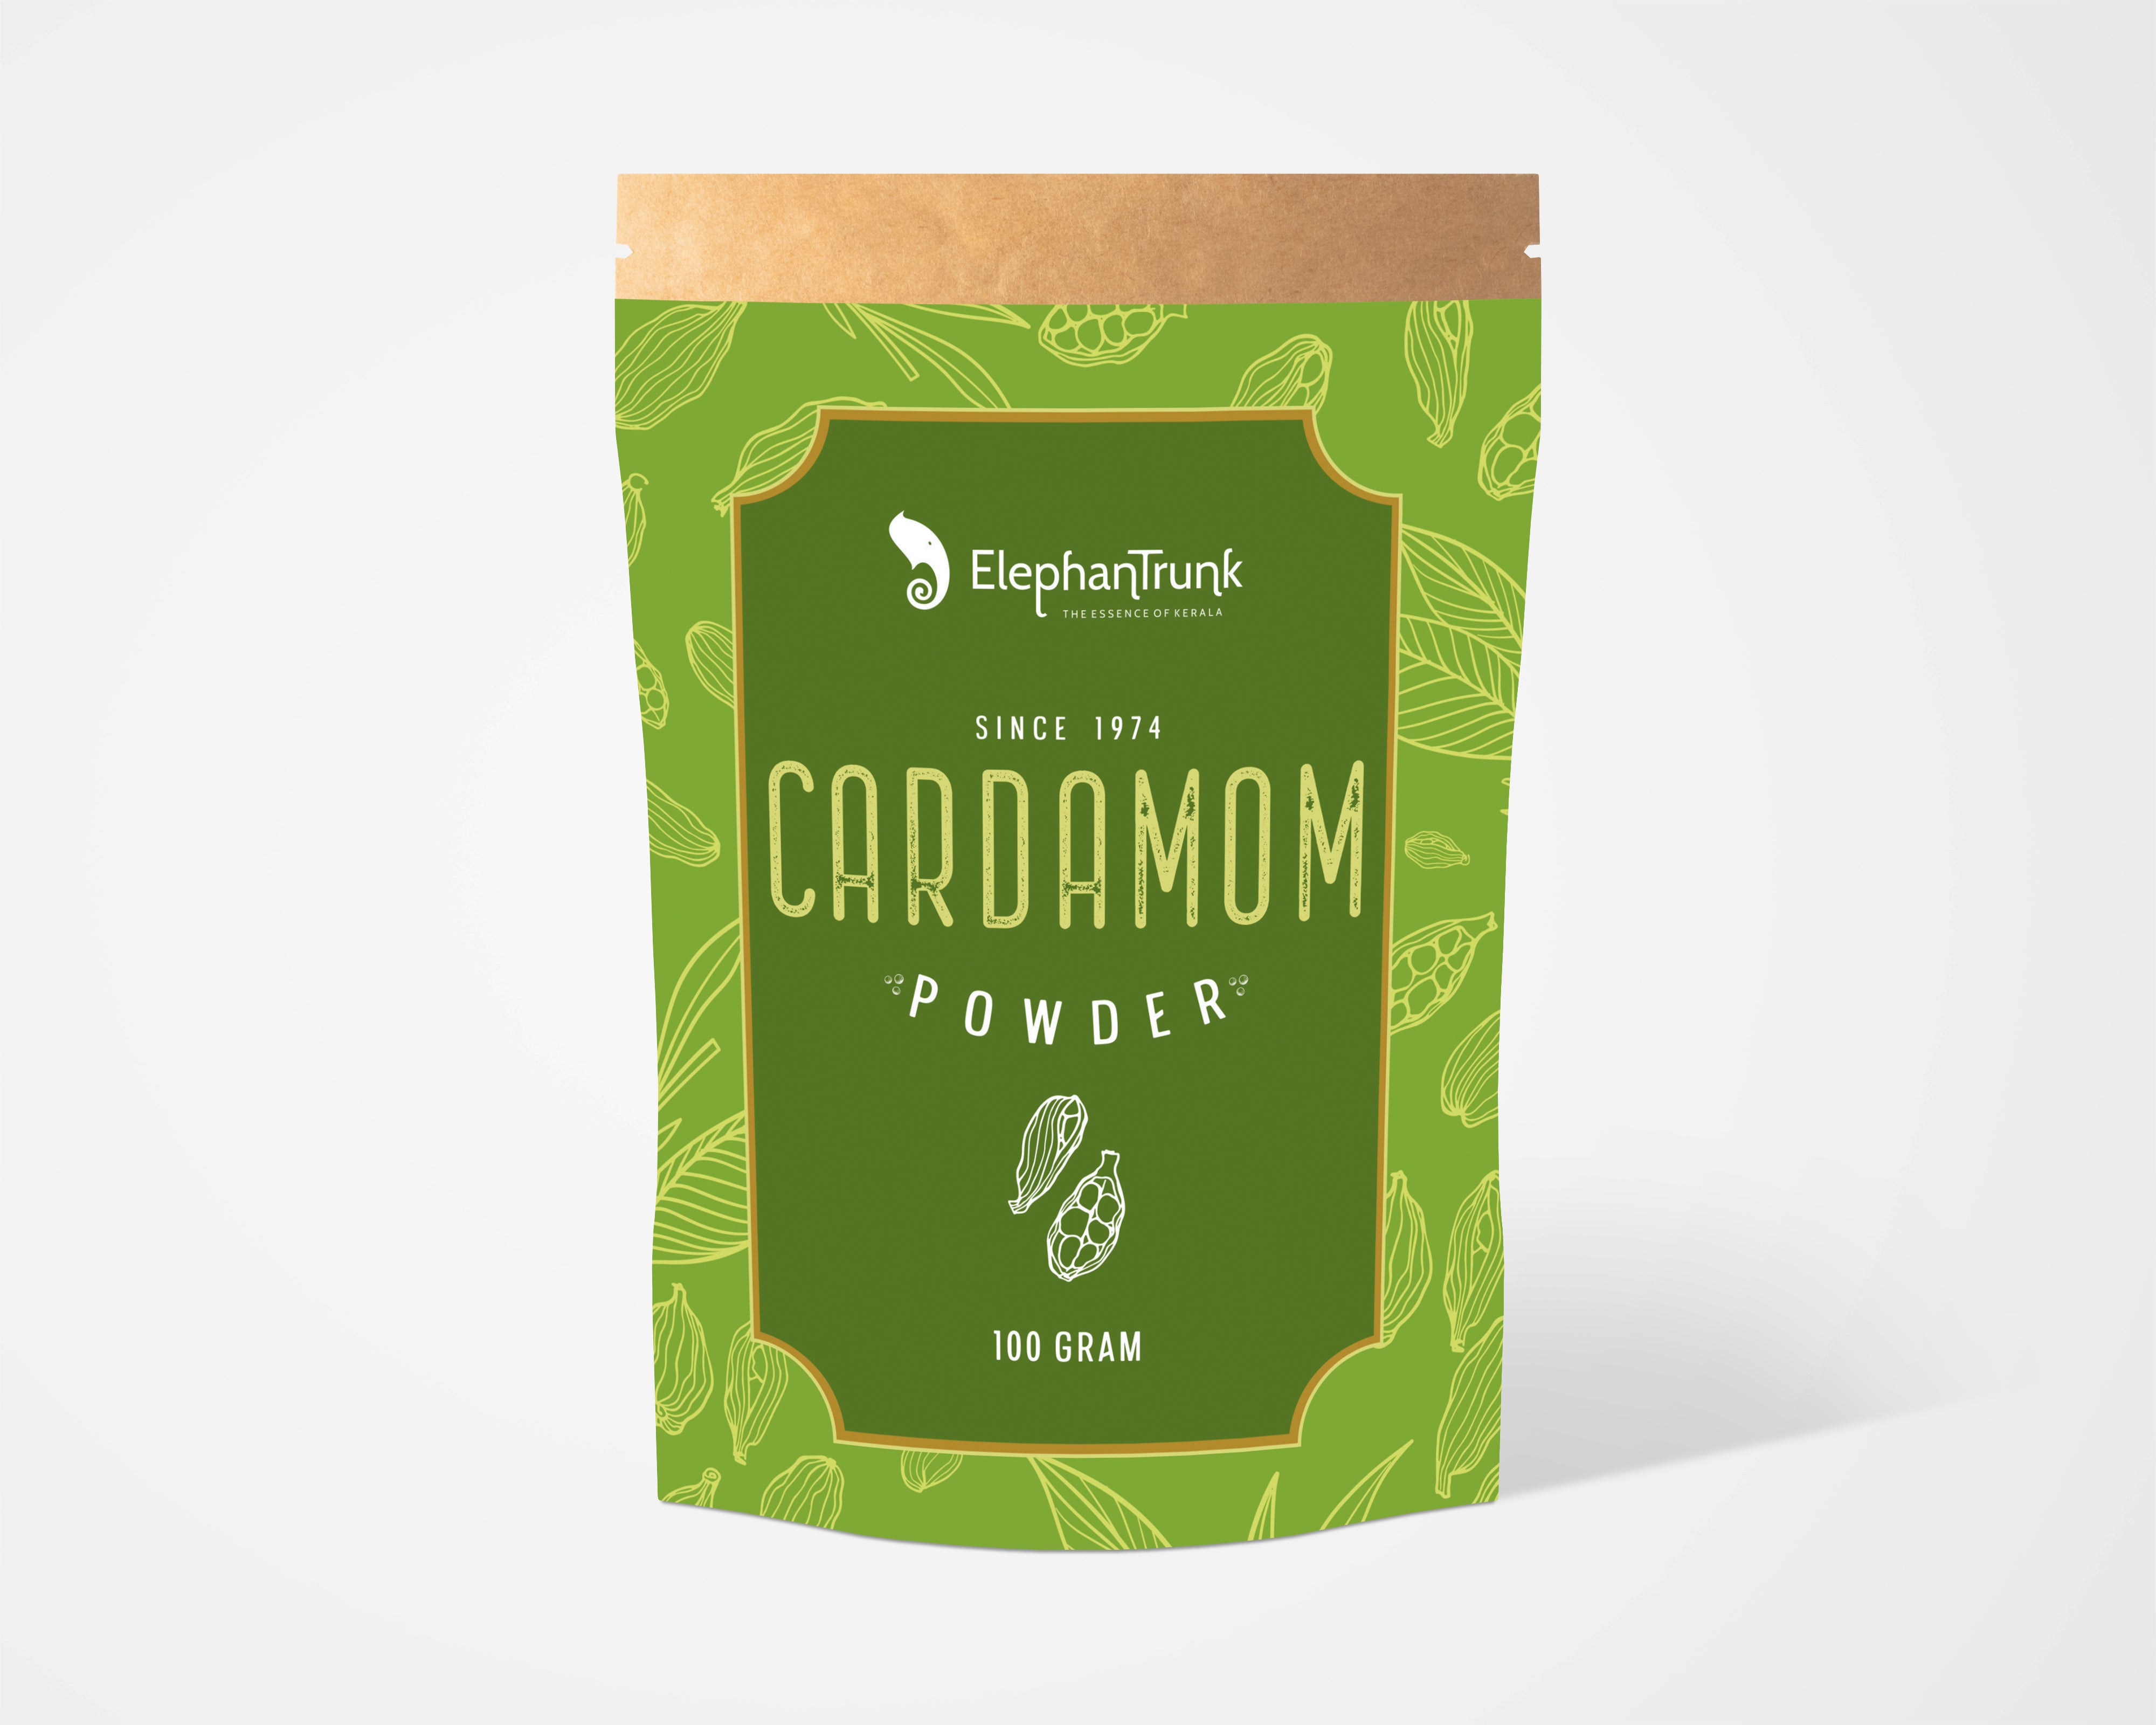 Pure and Natural cardamom powder from Kerala